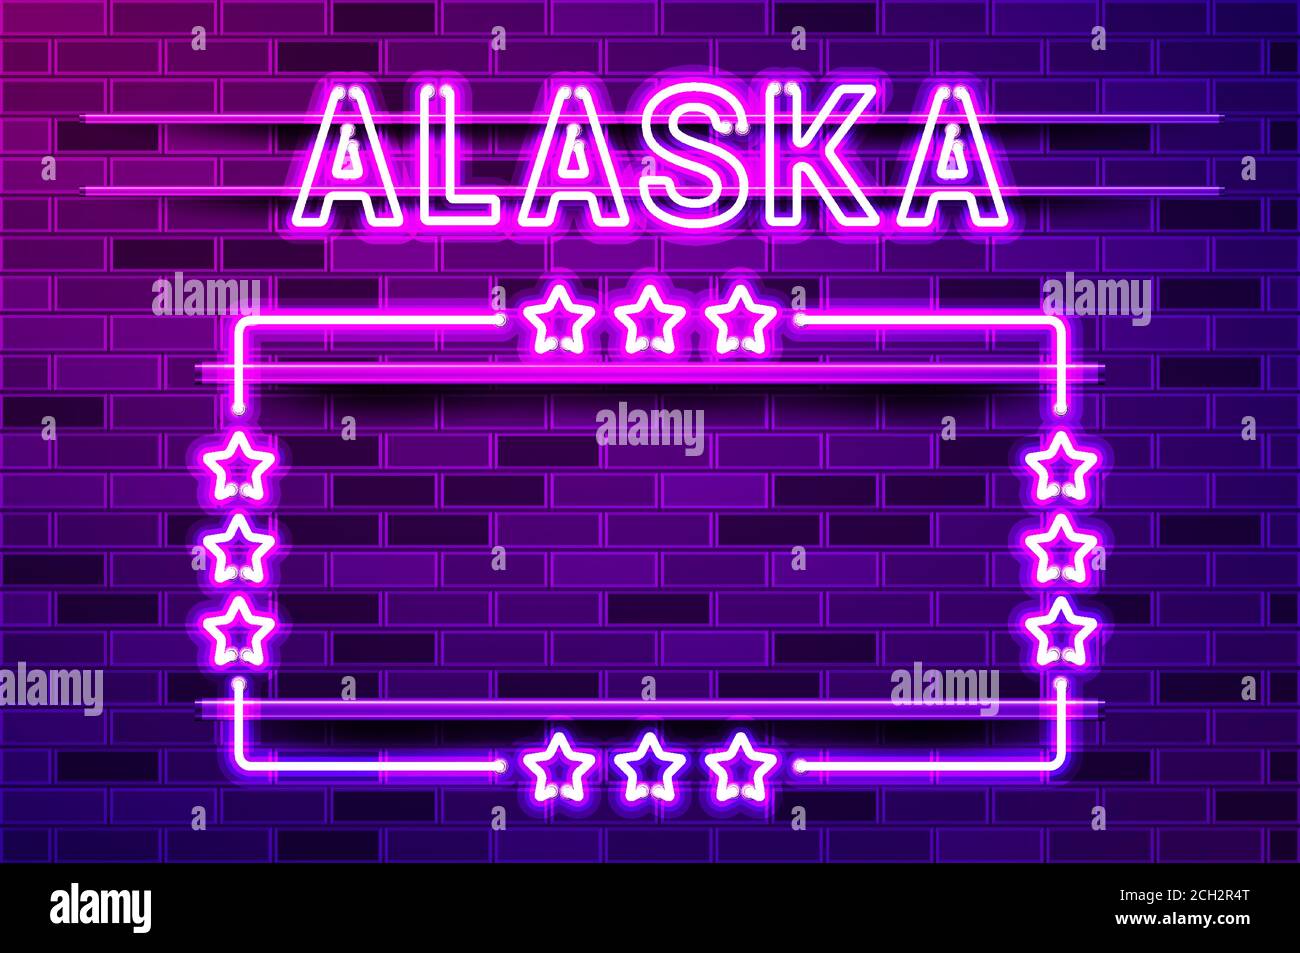 Alaska États-Unis lettrage au néon violet brillant et cadre rectangulaire avec étoiles. Illustration vectorielle réaliste. Mur de briques violets, violet phosphorescent, métal Illustration de Vecteur